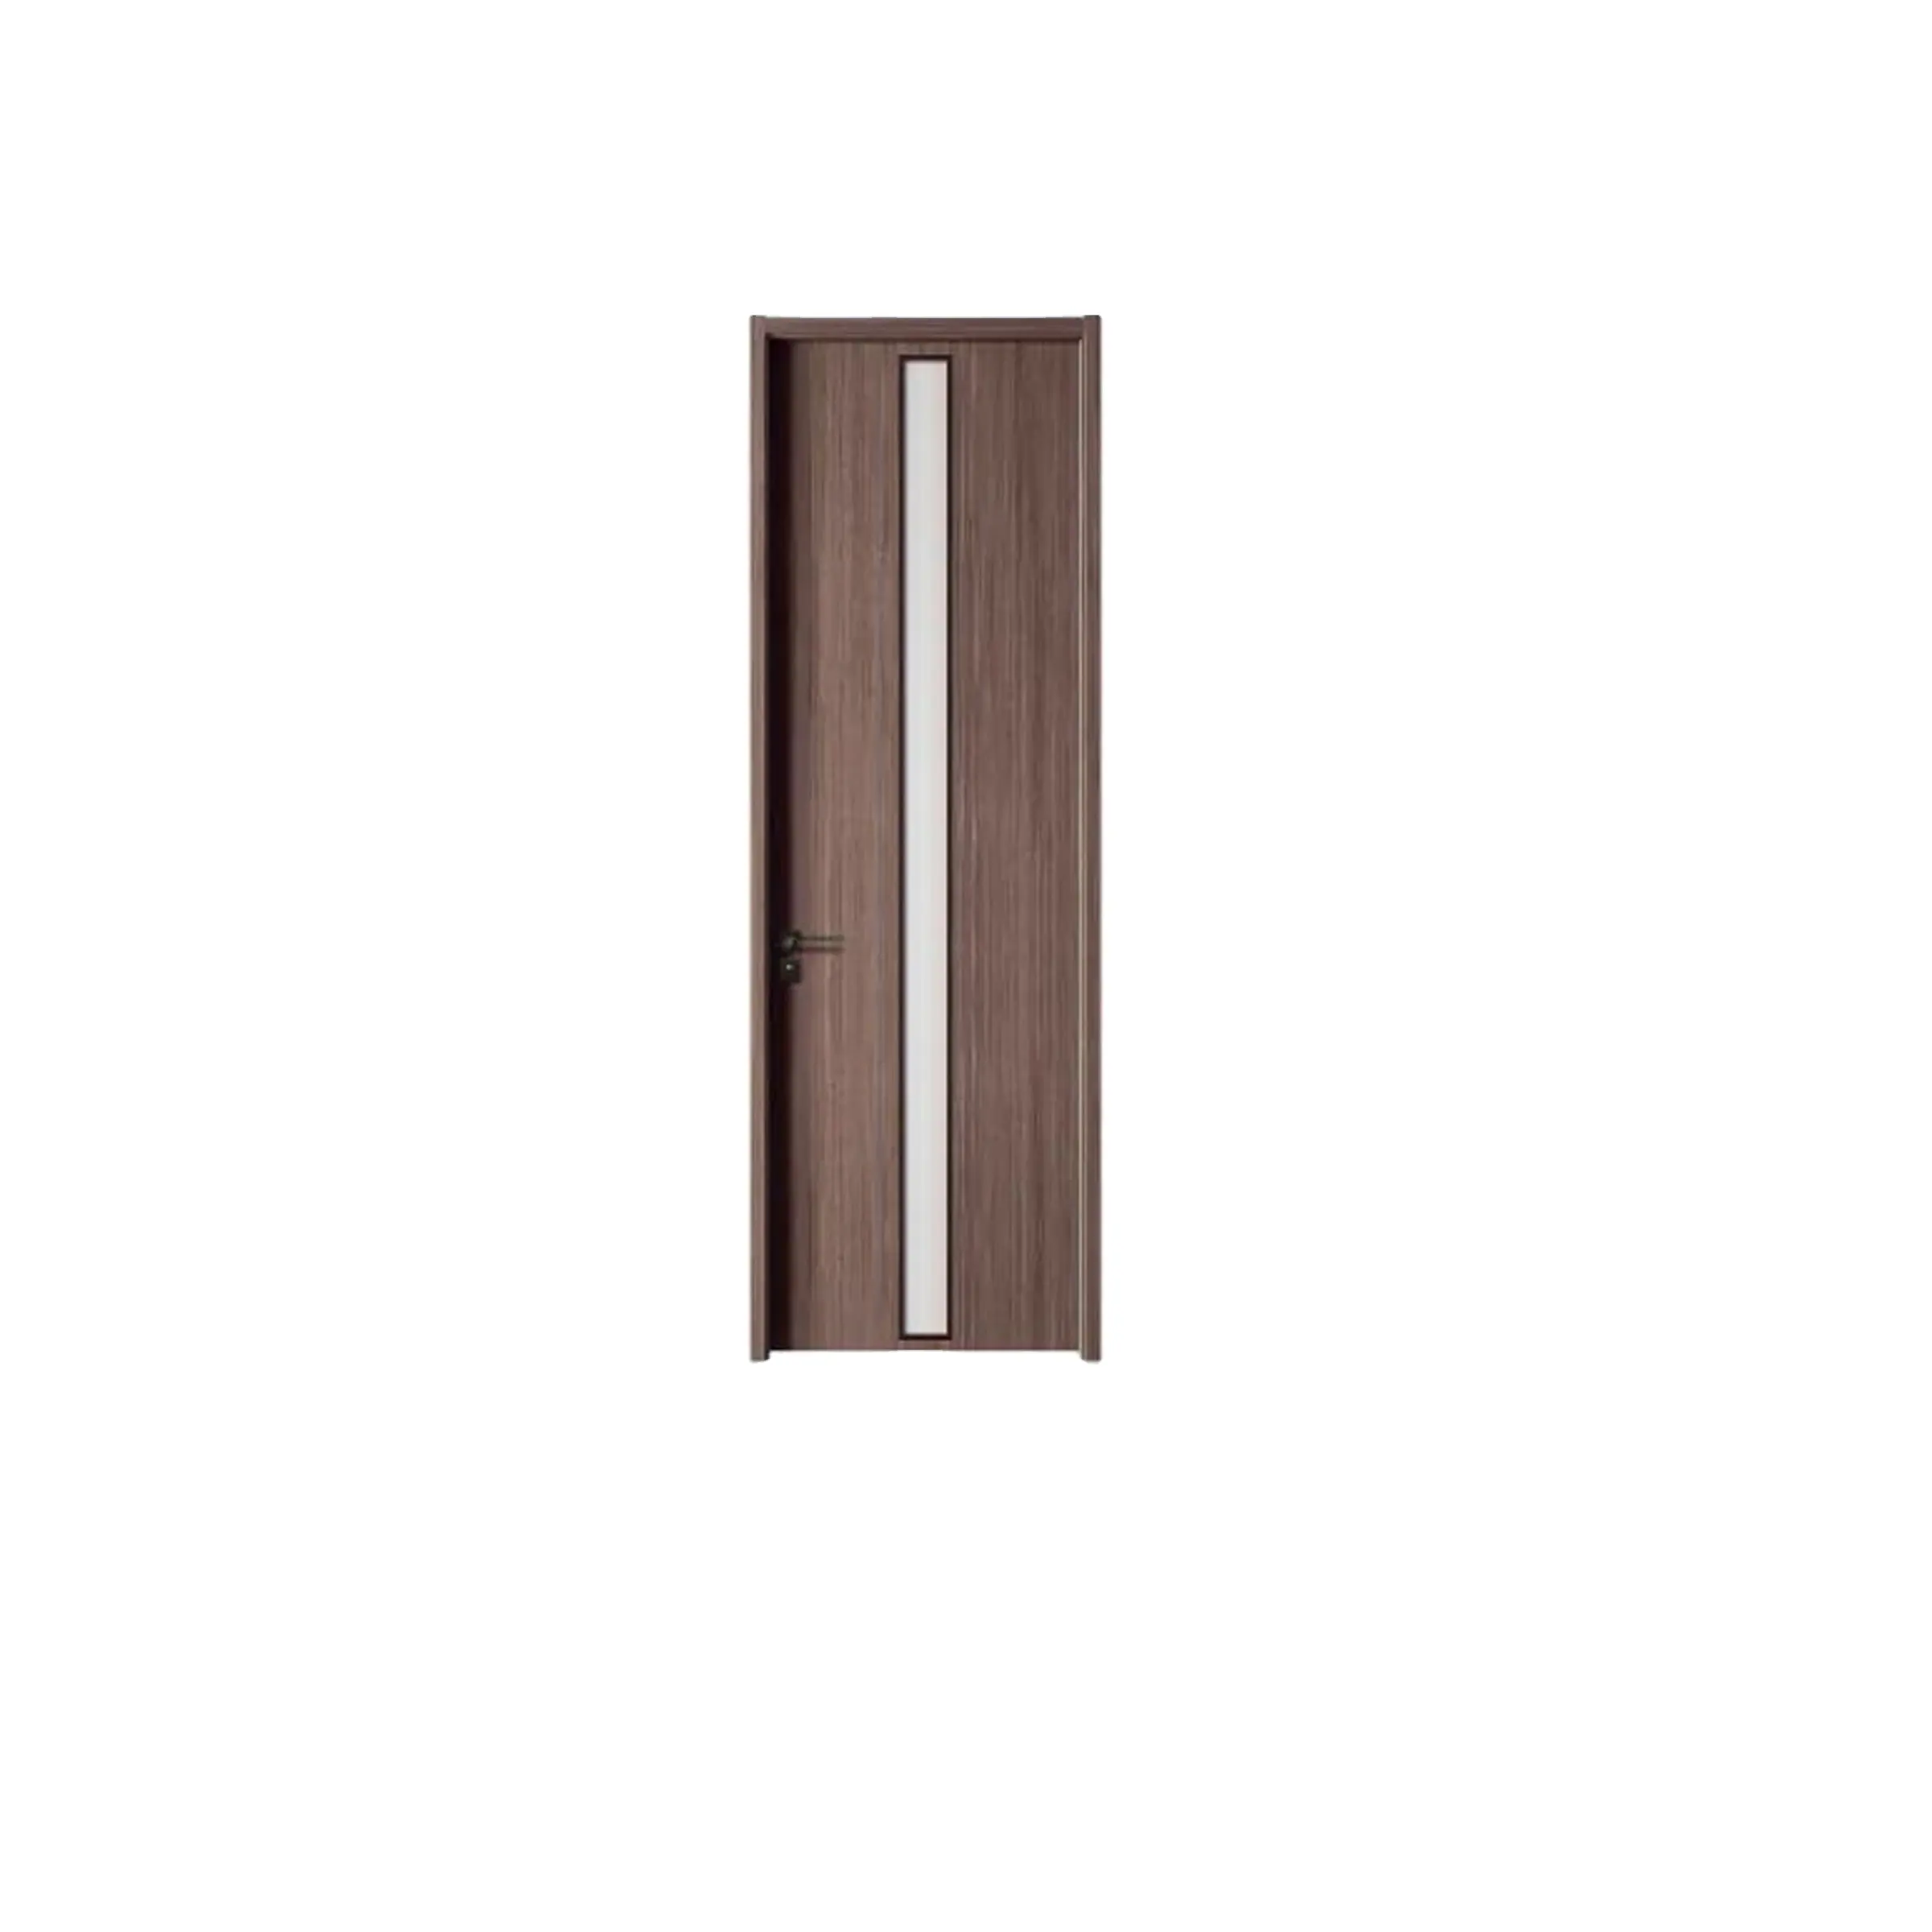 Di alta qualità prezzo a buon mercato camera Prehung Design moderno ingresso Teak solido in PVC porta interna in legno